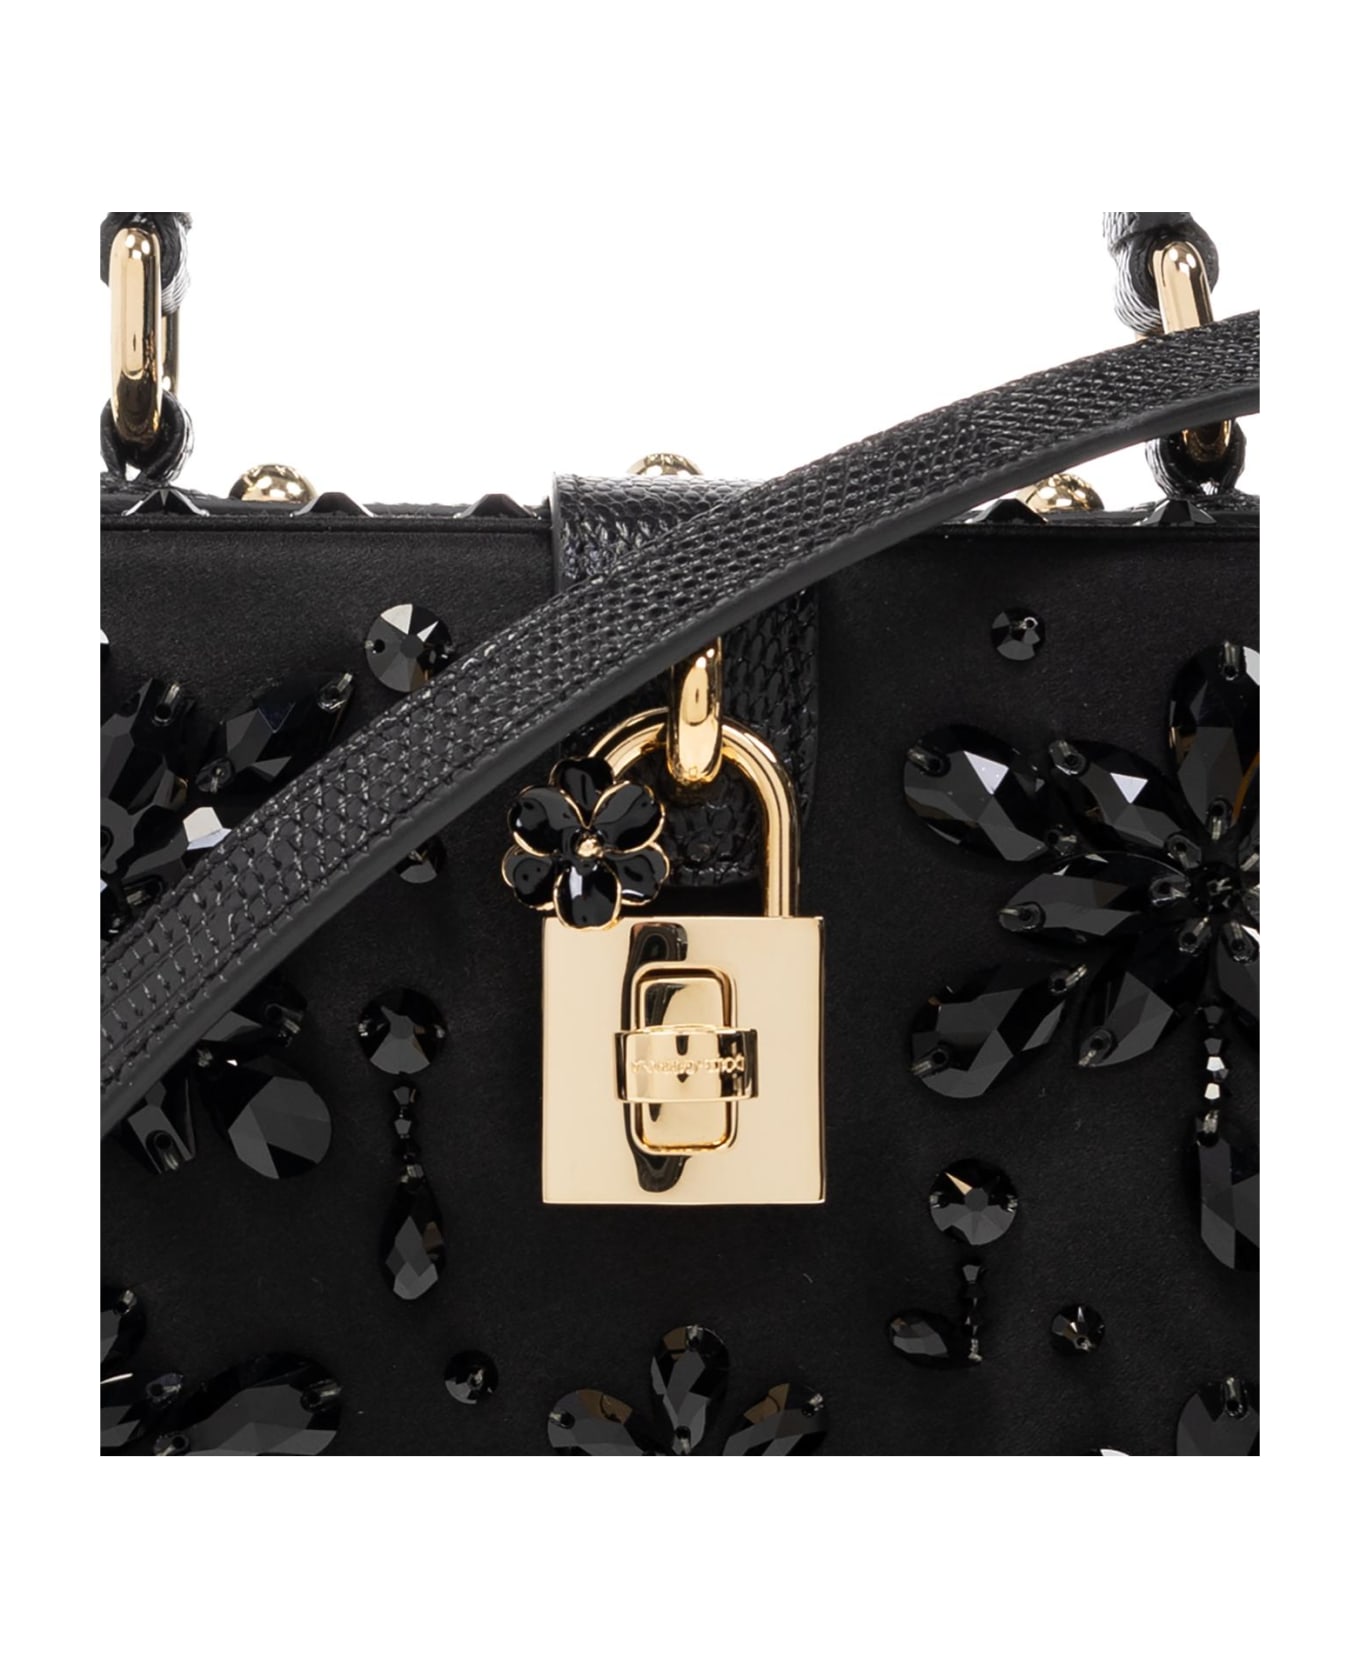 Dolce & Gabbana Shoulder Bag - Nero/jet